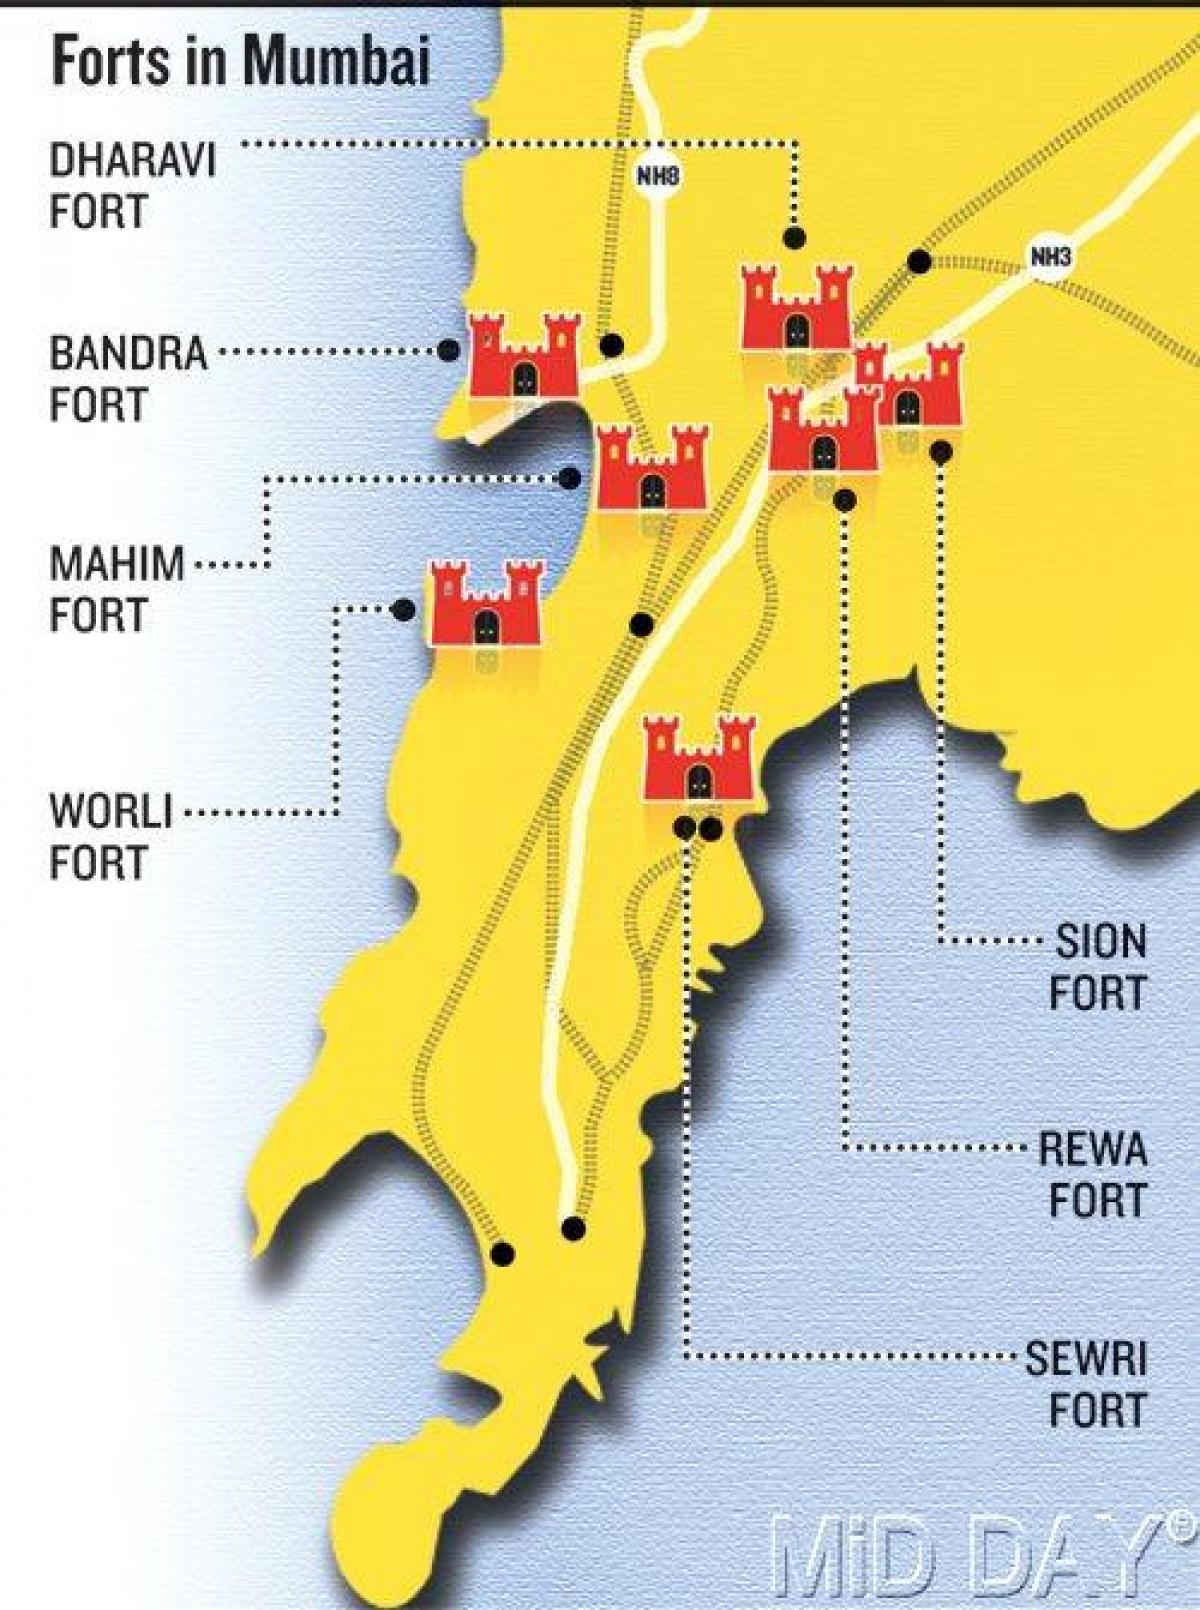 Mumbajus fort rajone žemėlapyje